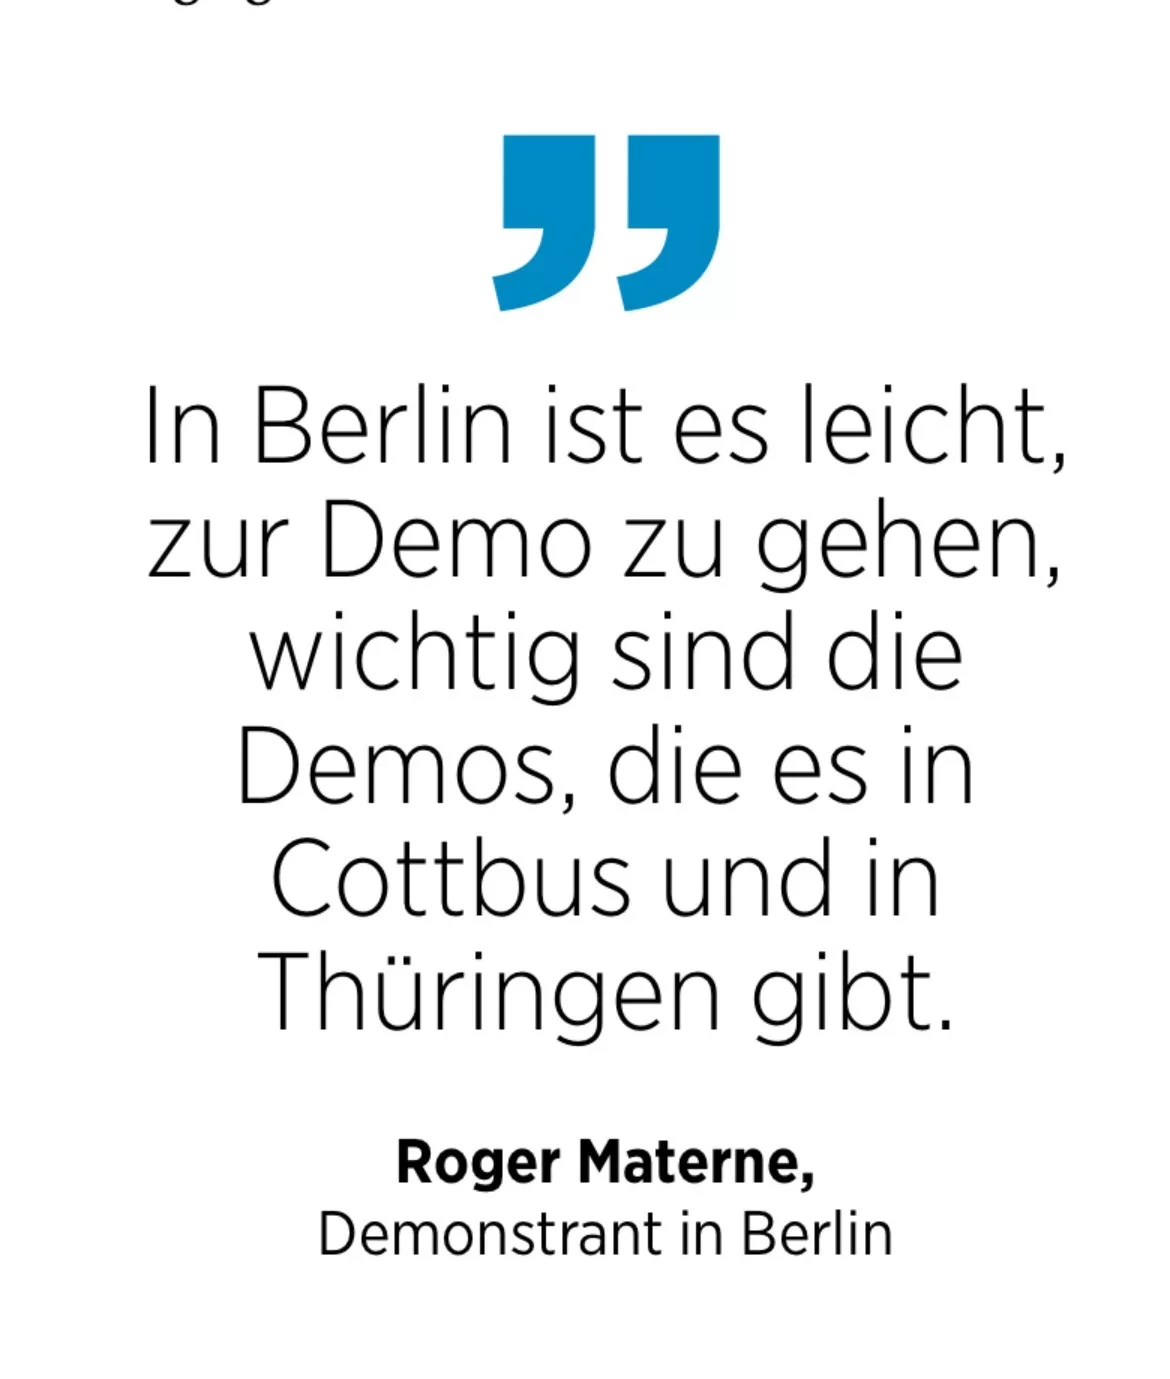 Roger Materne, Demonstrant in Berlin: In Berlin ist es leicht, zur Demo zu gehen, wichtig sind die Demos, die es in Cottbus und in Thüringen gibt.